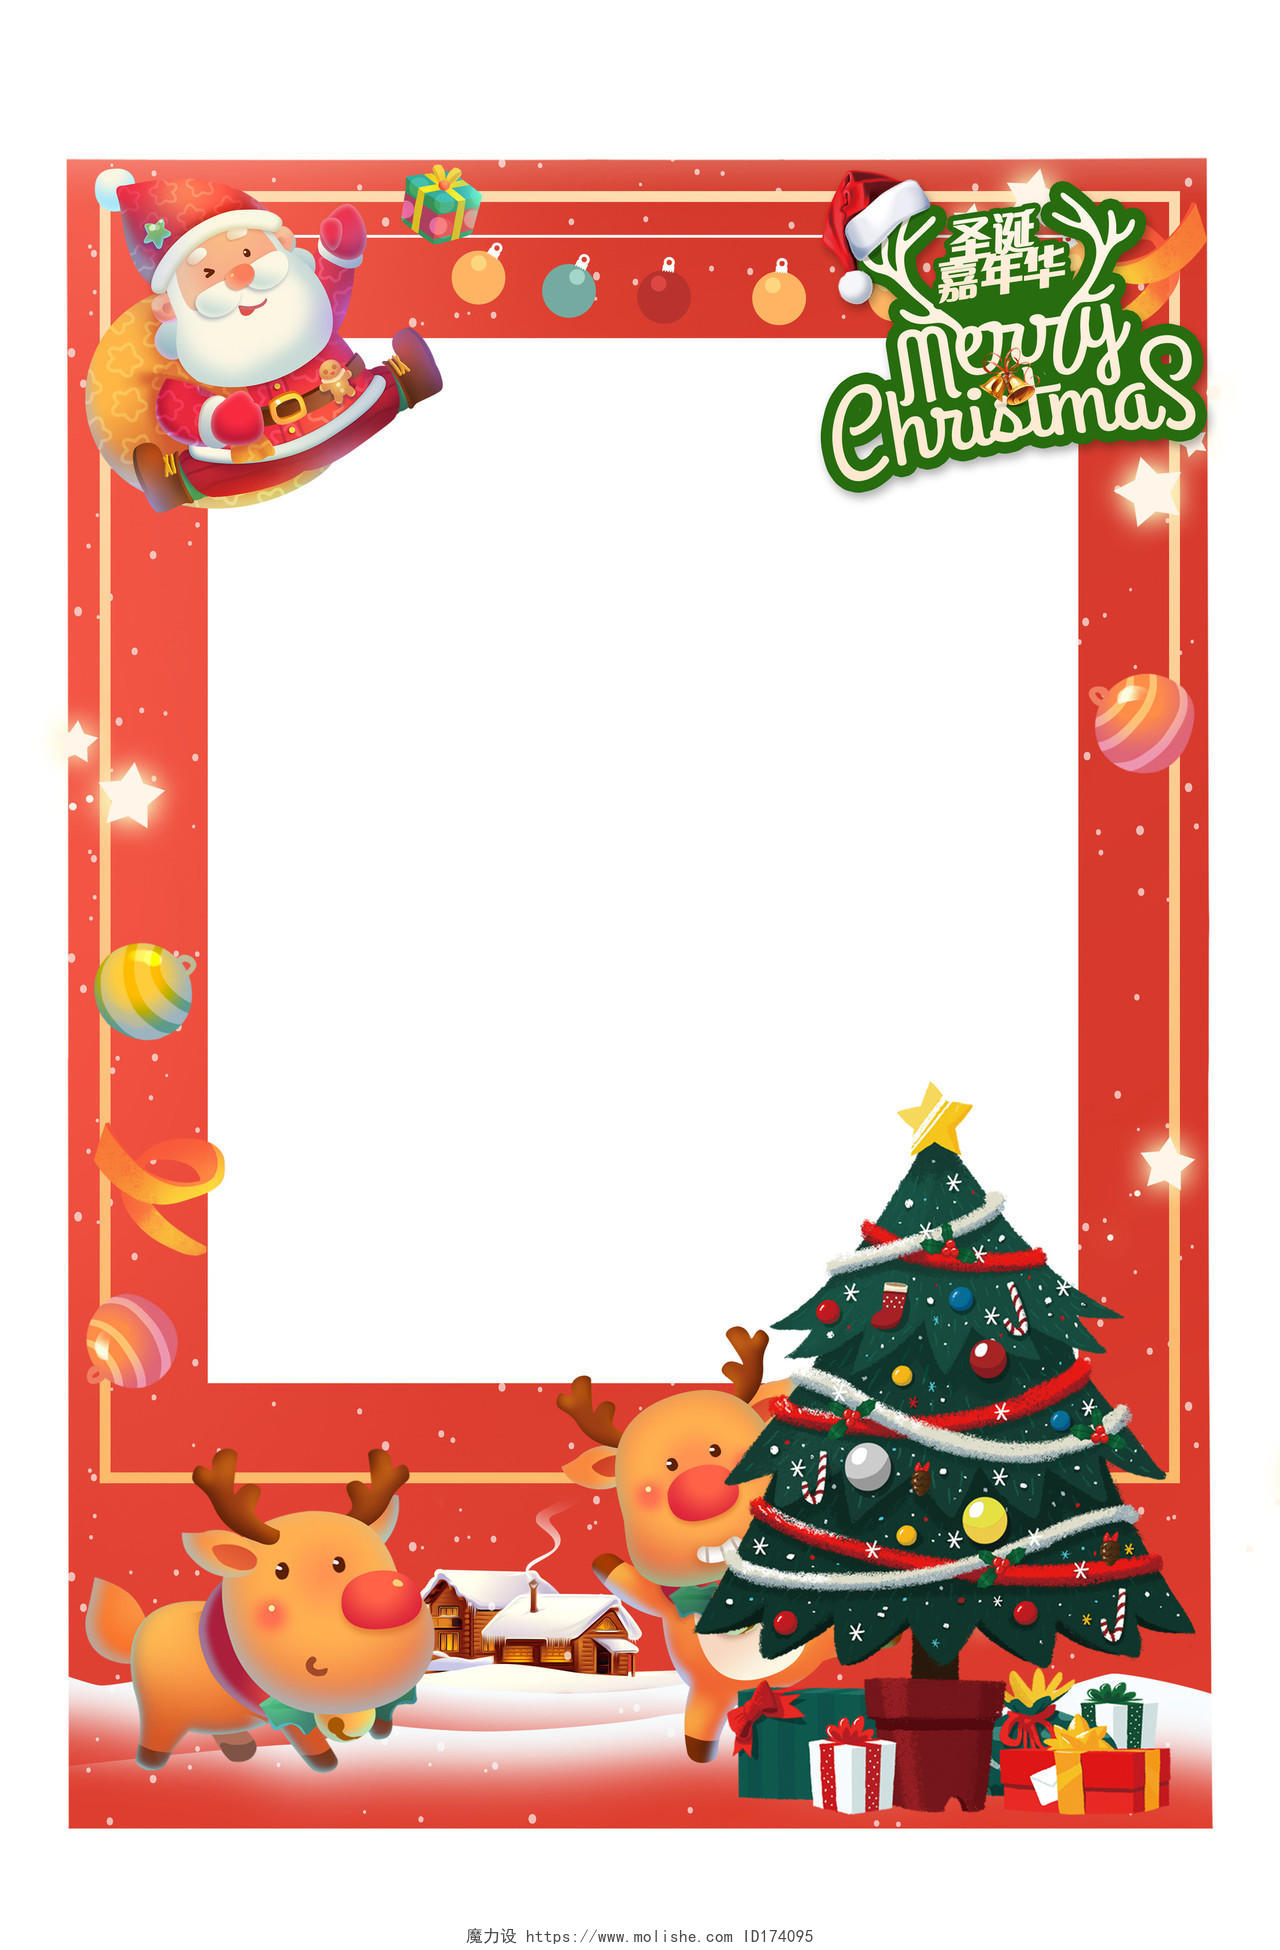 圣诞节红色背景卡通风格拍照框圣诞节圣诞拍照框圣诞节拍照框